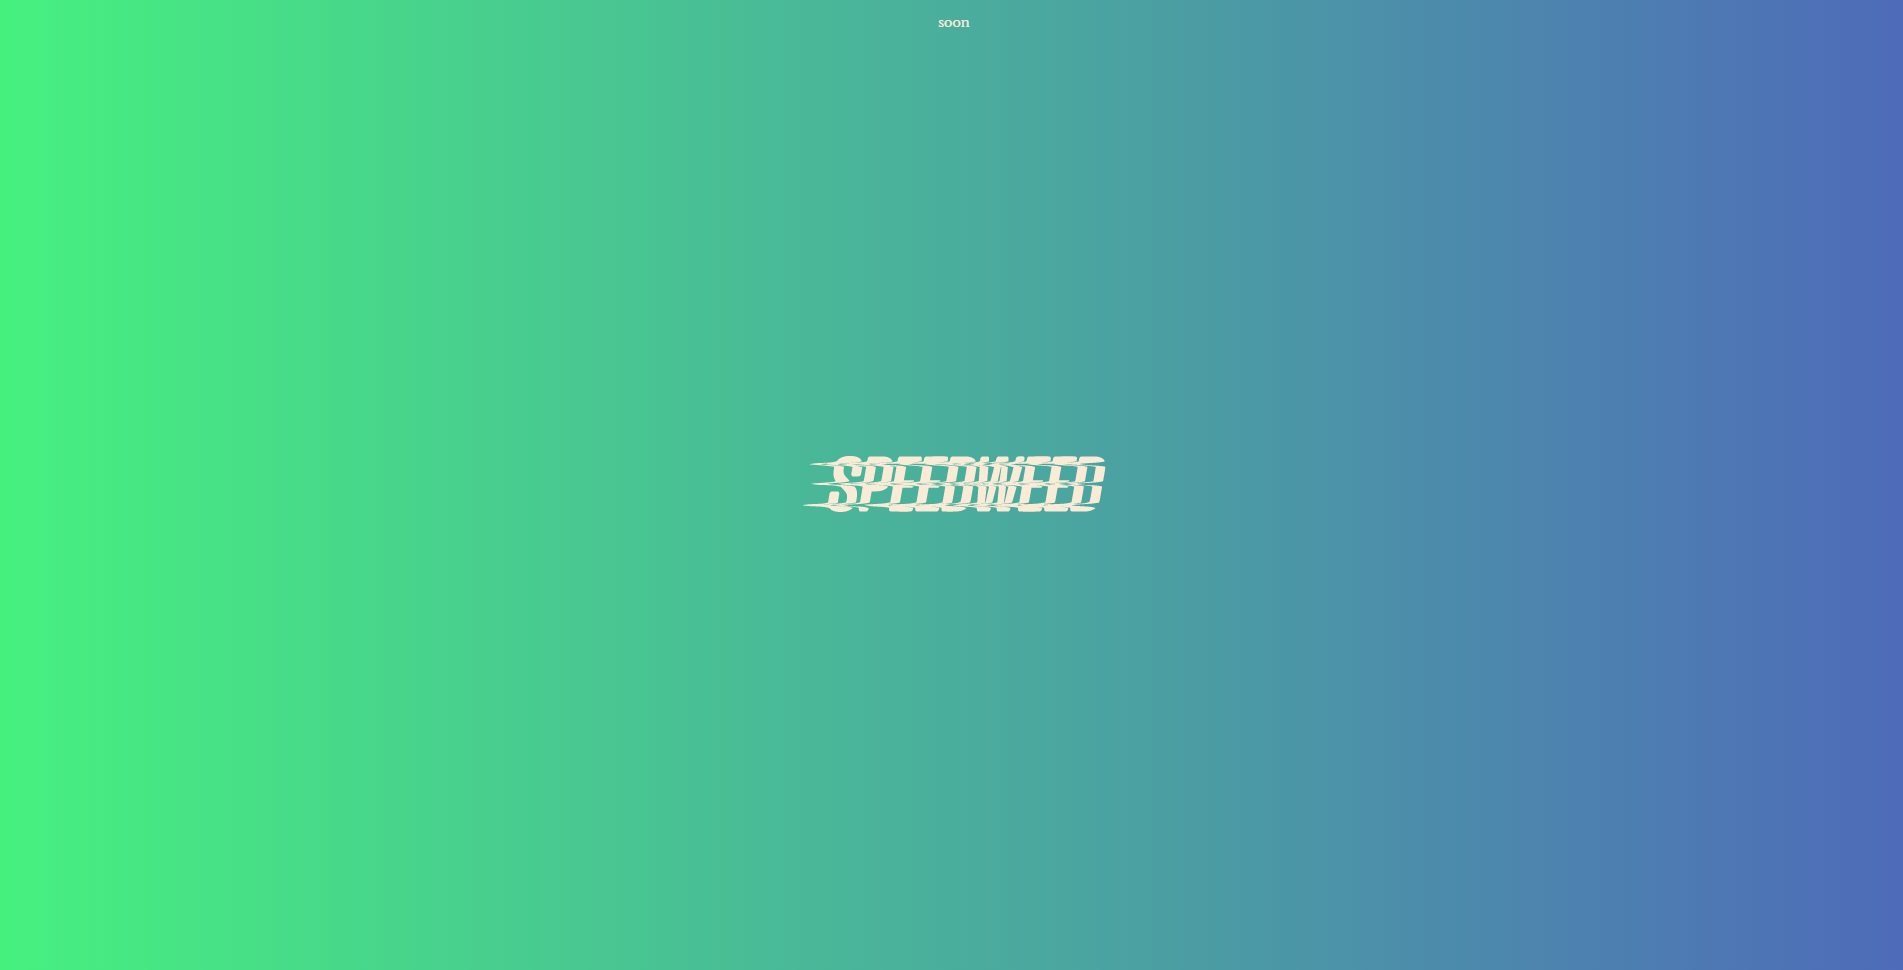 speedweed homepage